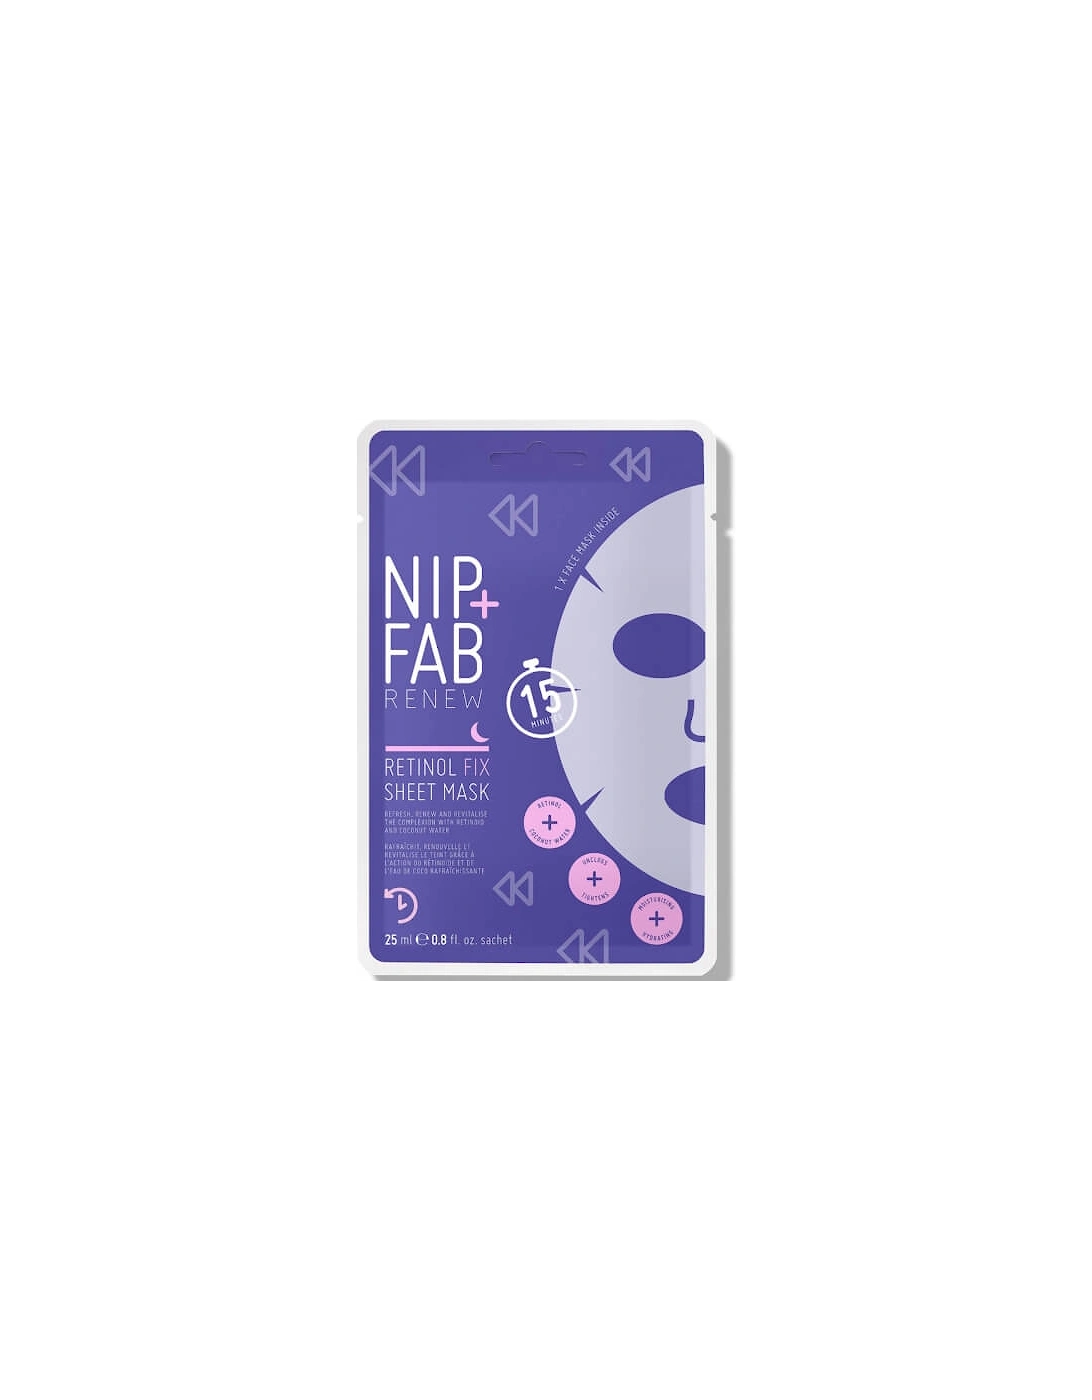 NIP+FAB Retinol Fix Sheet Mask 10g, 2 of 1